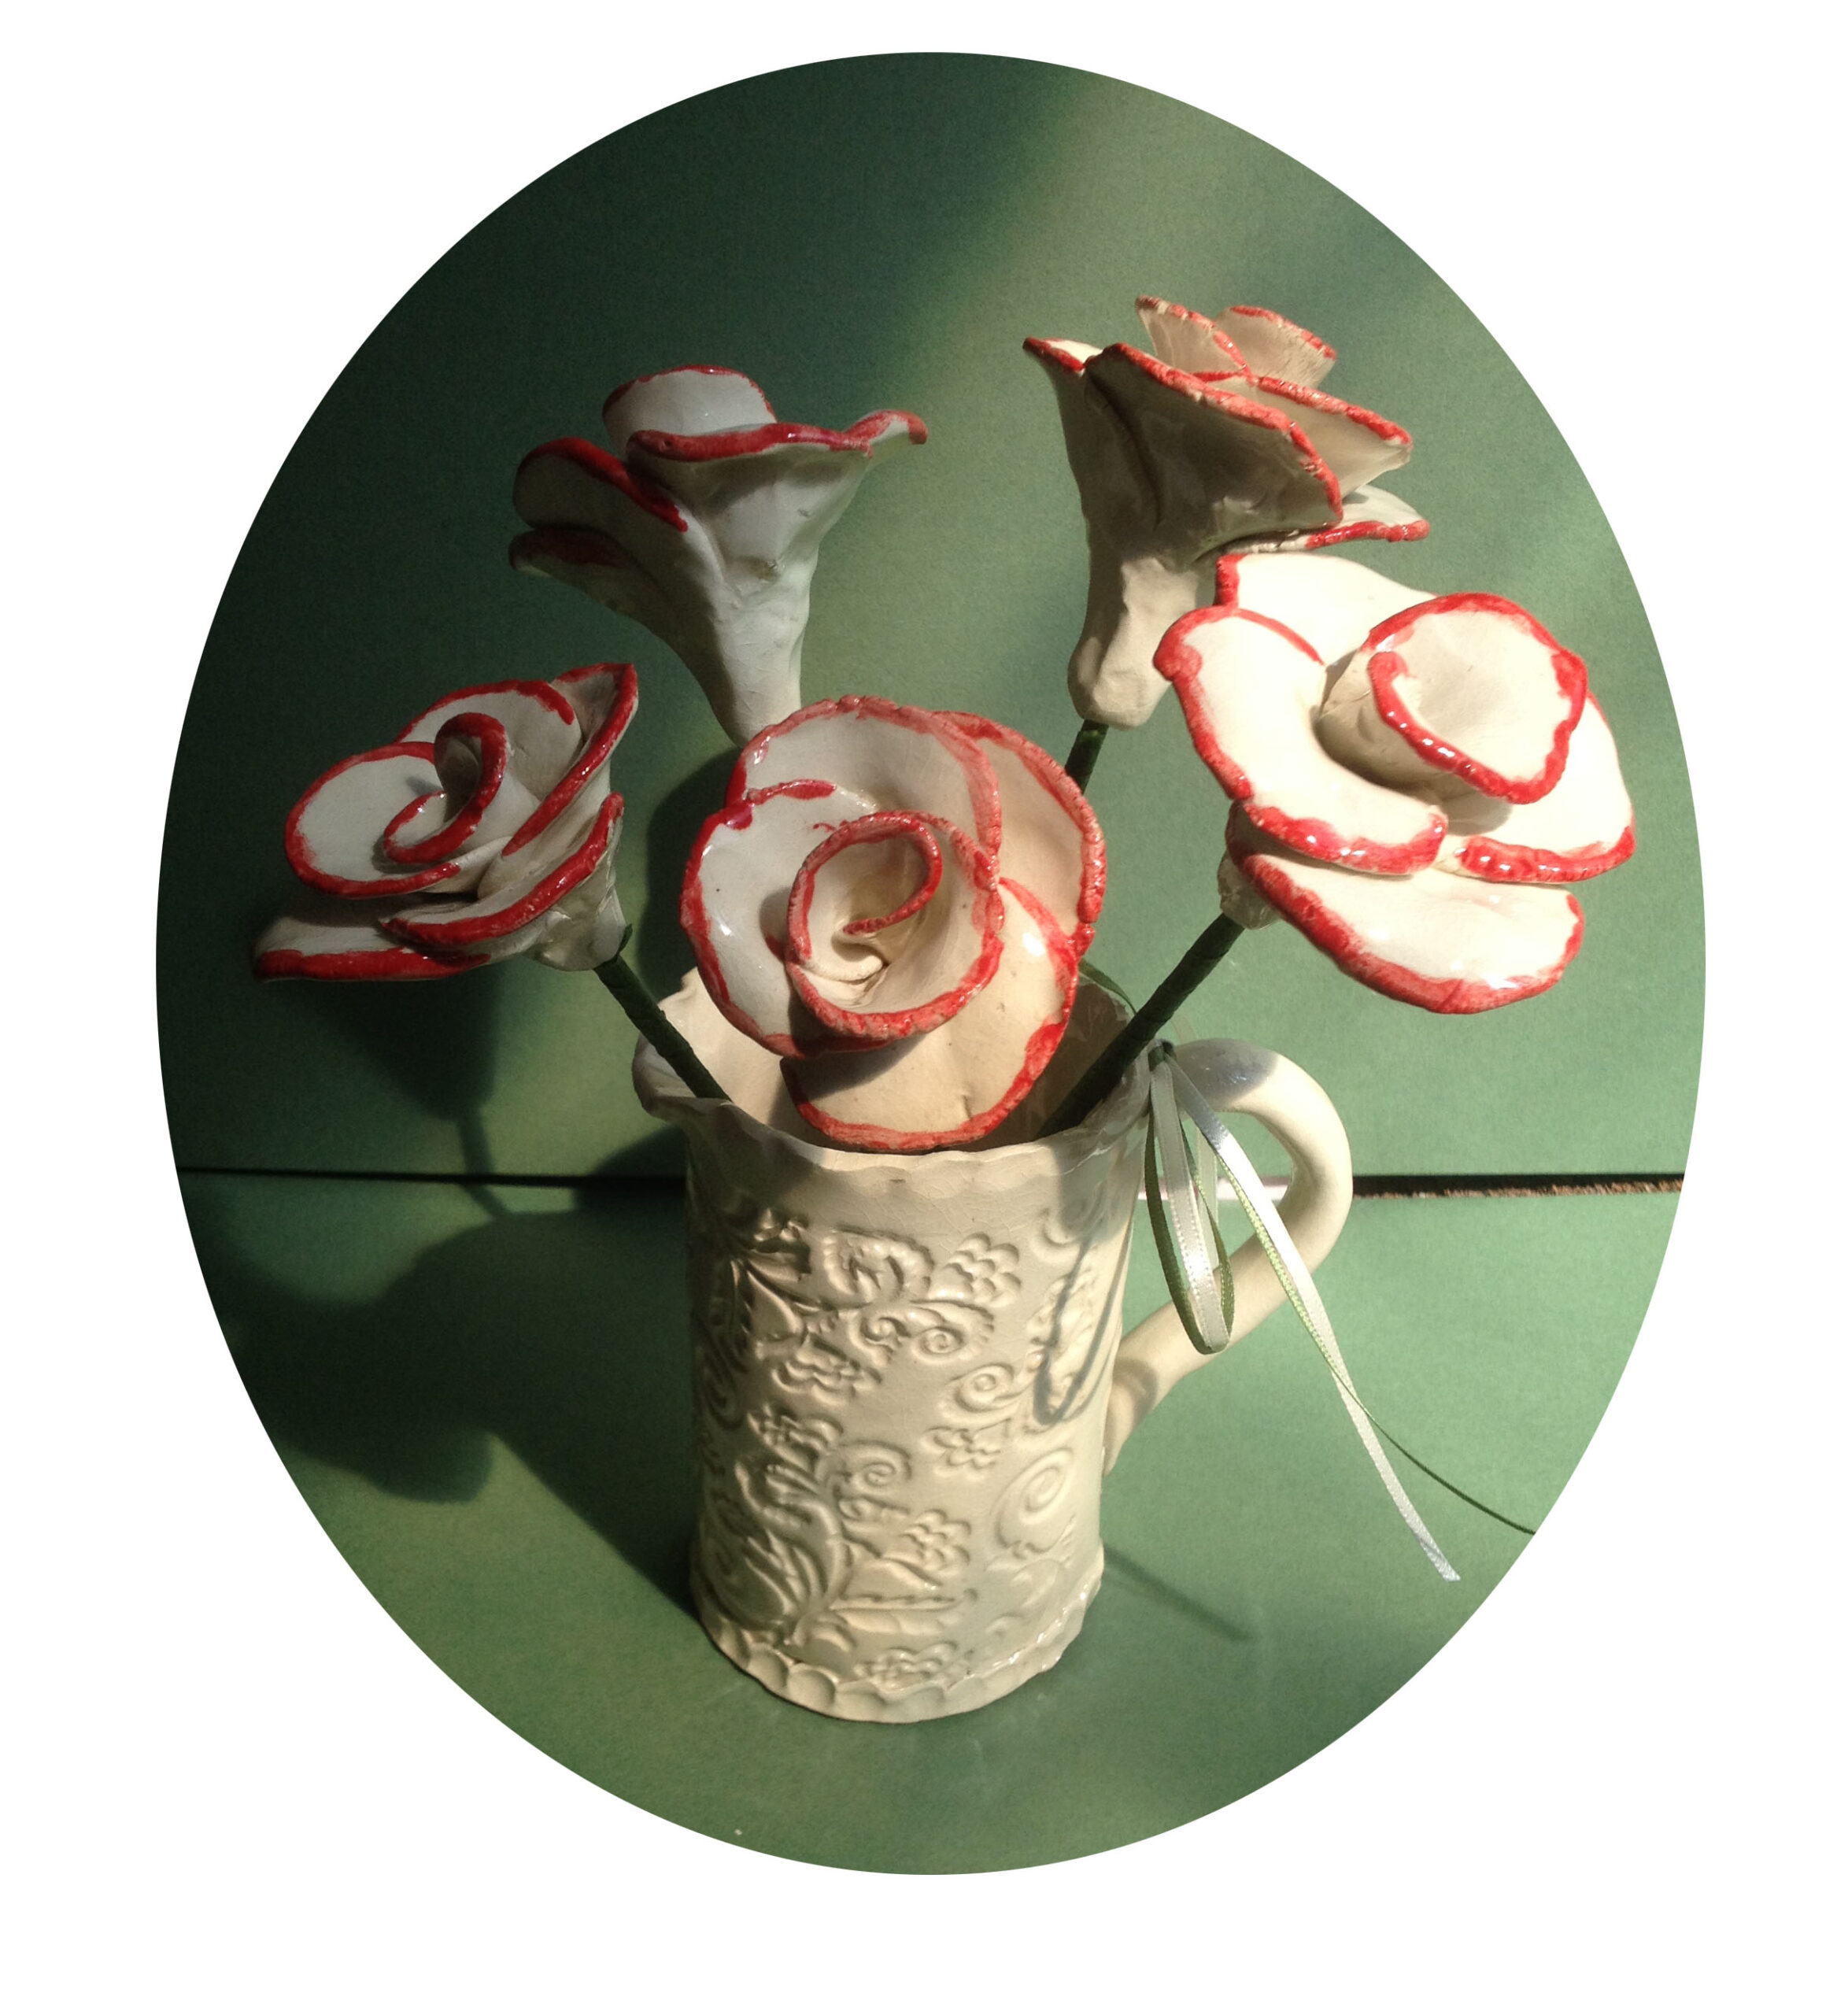 clay ceramic roses hand made pottery wedding anniversary gift sevenoaks